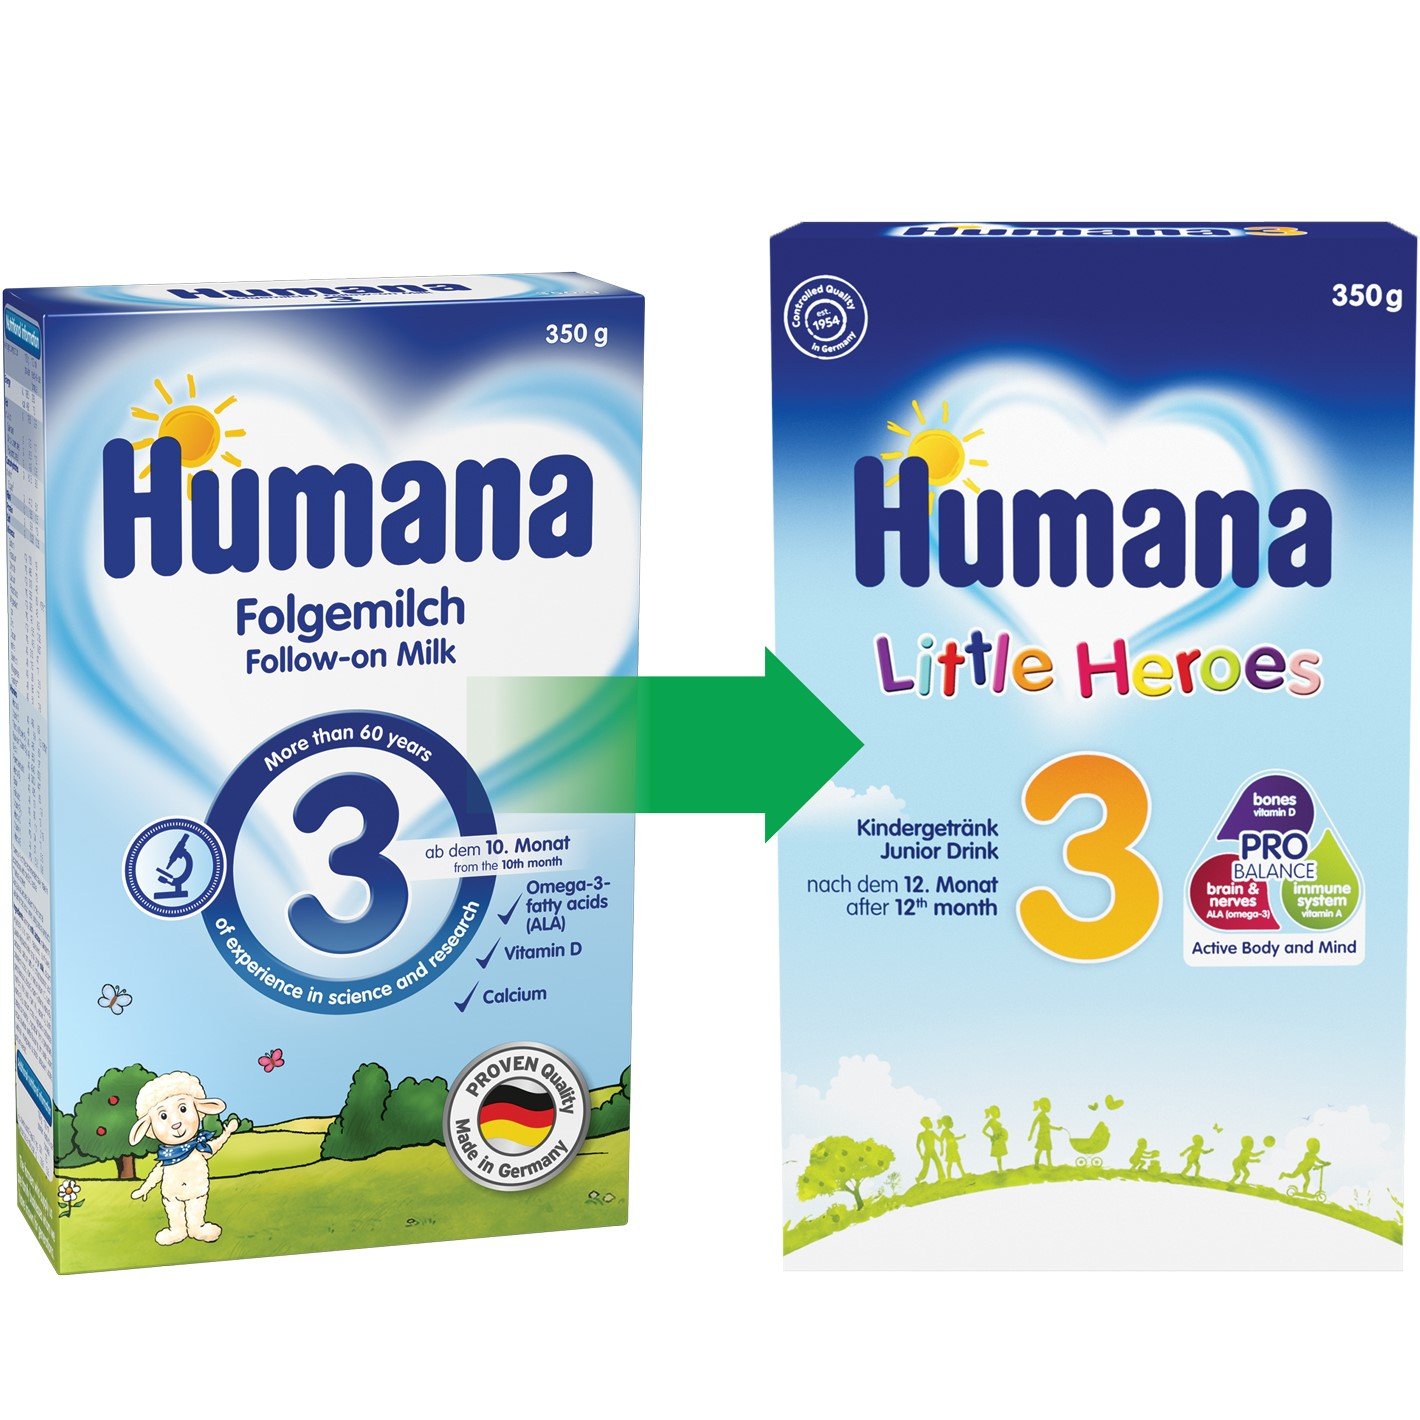 Суха молочна суміш Humana 3, 350 г - фото 2